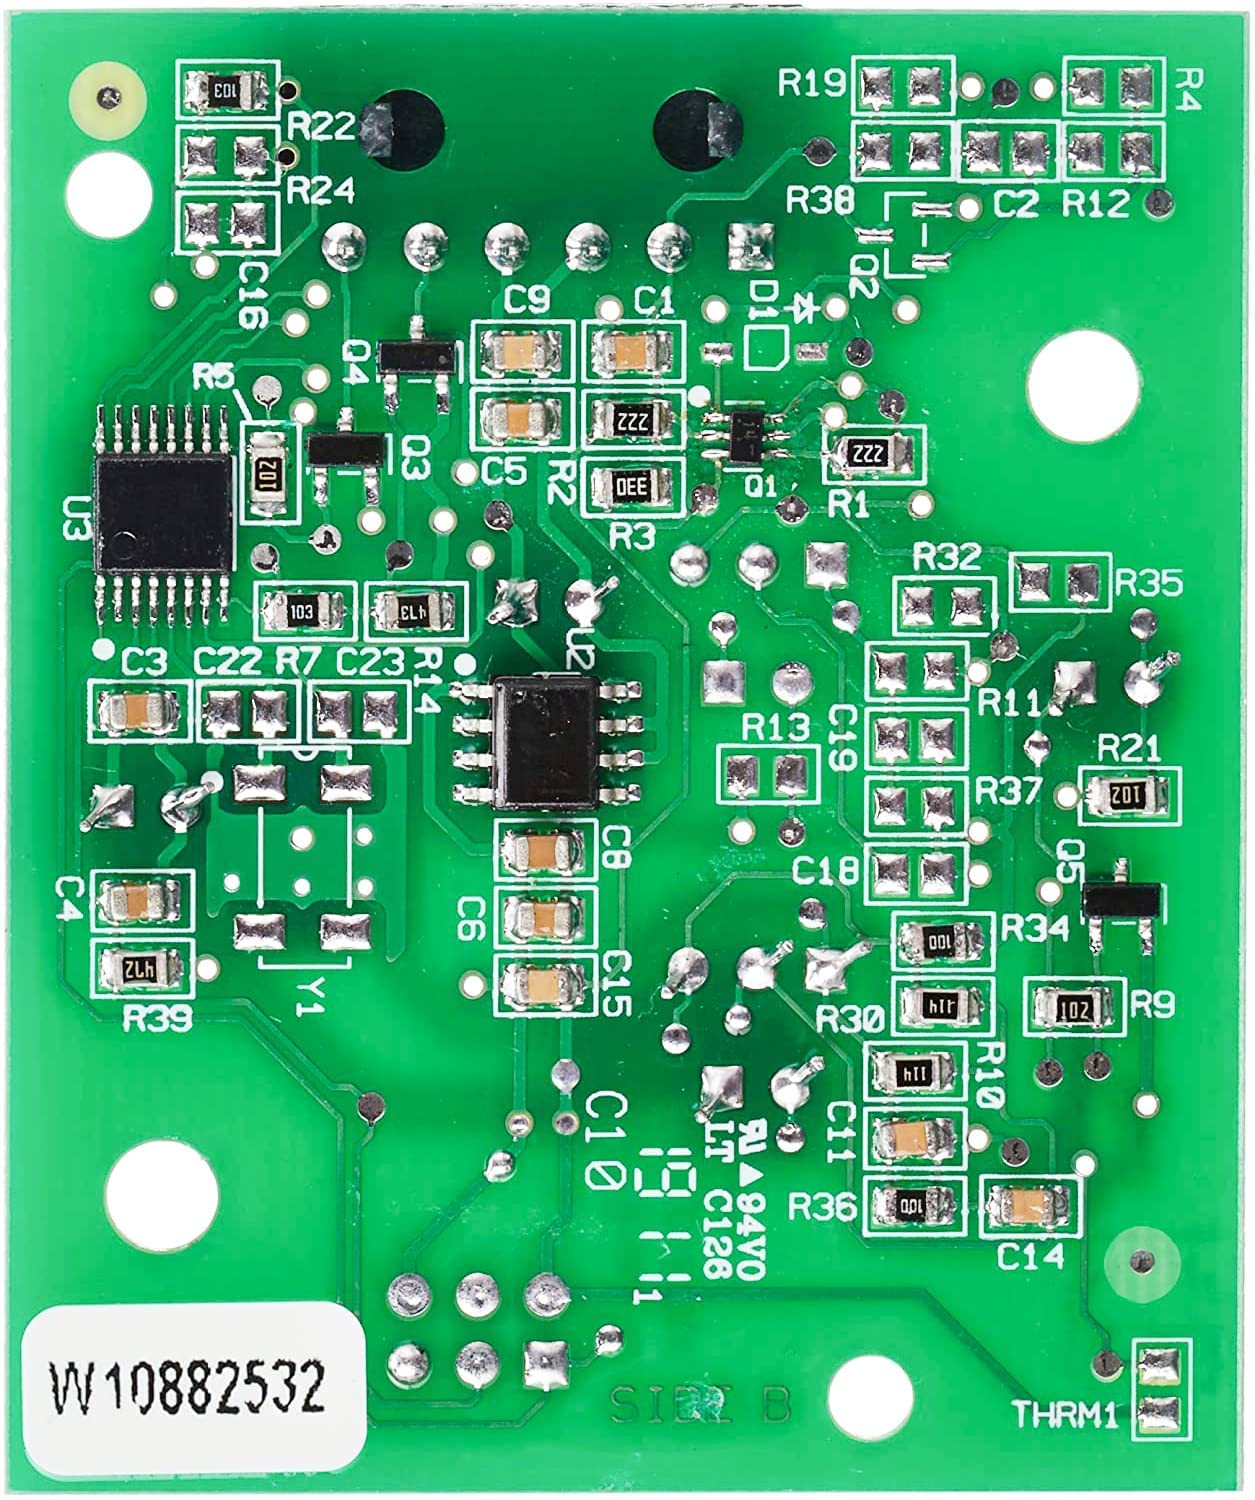 W10898445 W10518658 W10273549 W10260821 W10882532 for Whirlpool Refrigerator Electronic Control Board